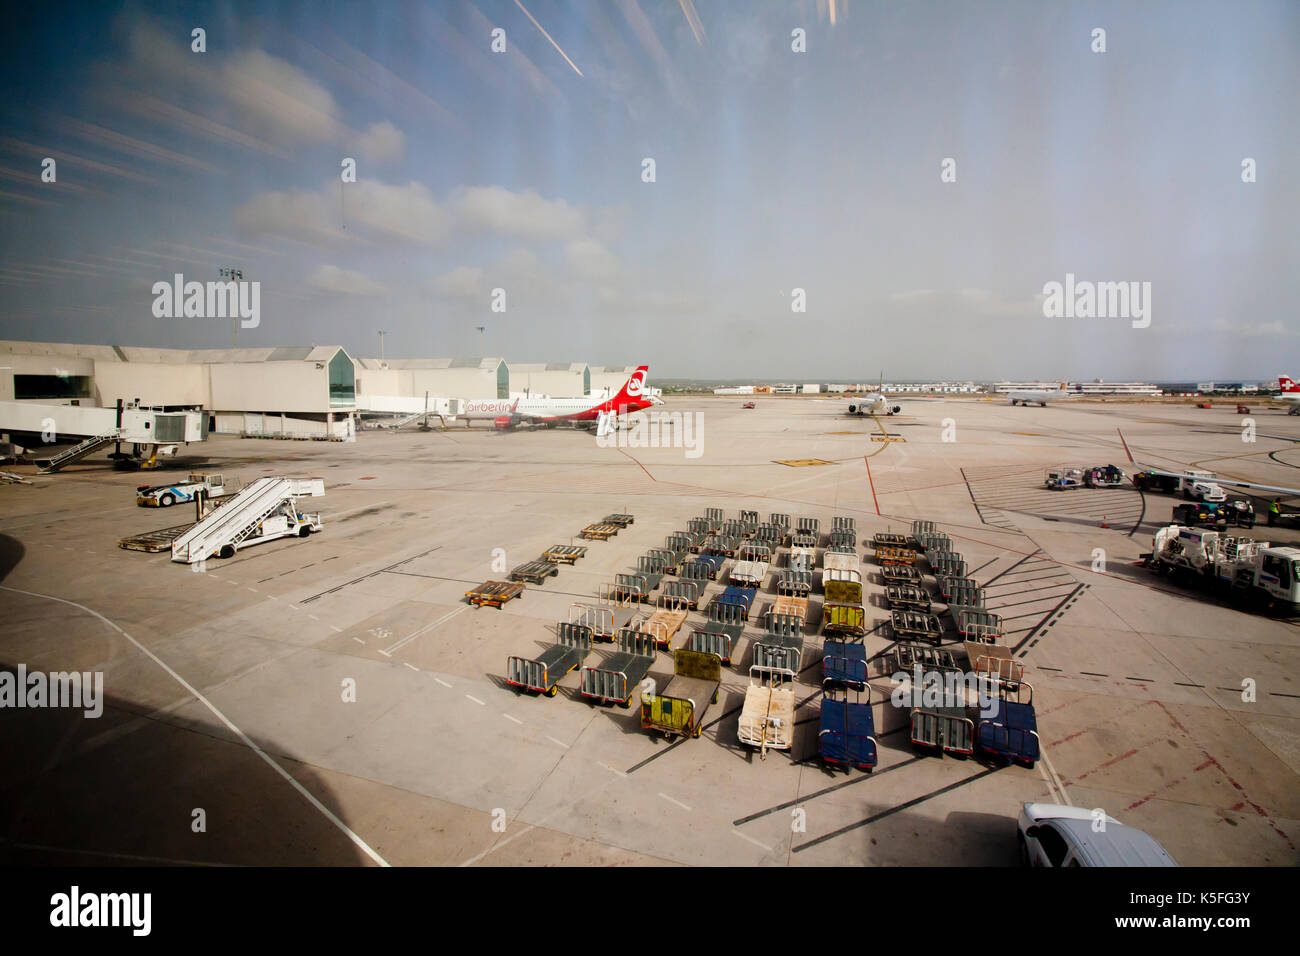 Panorama view of Palma de Mallorca airport, 08.07.2017 Palma de Mallorca, Spain Stock Photo